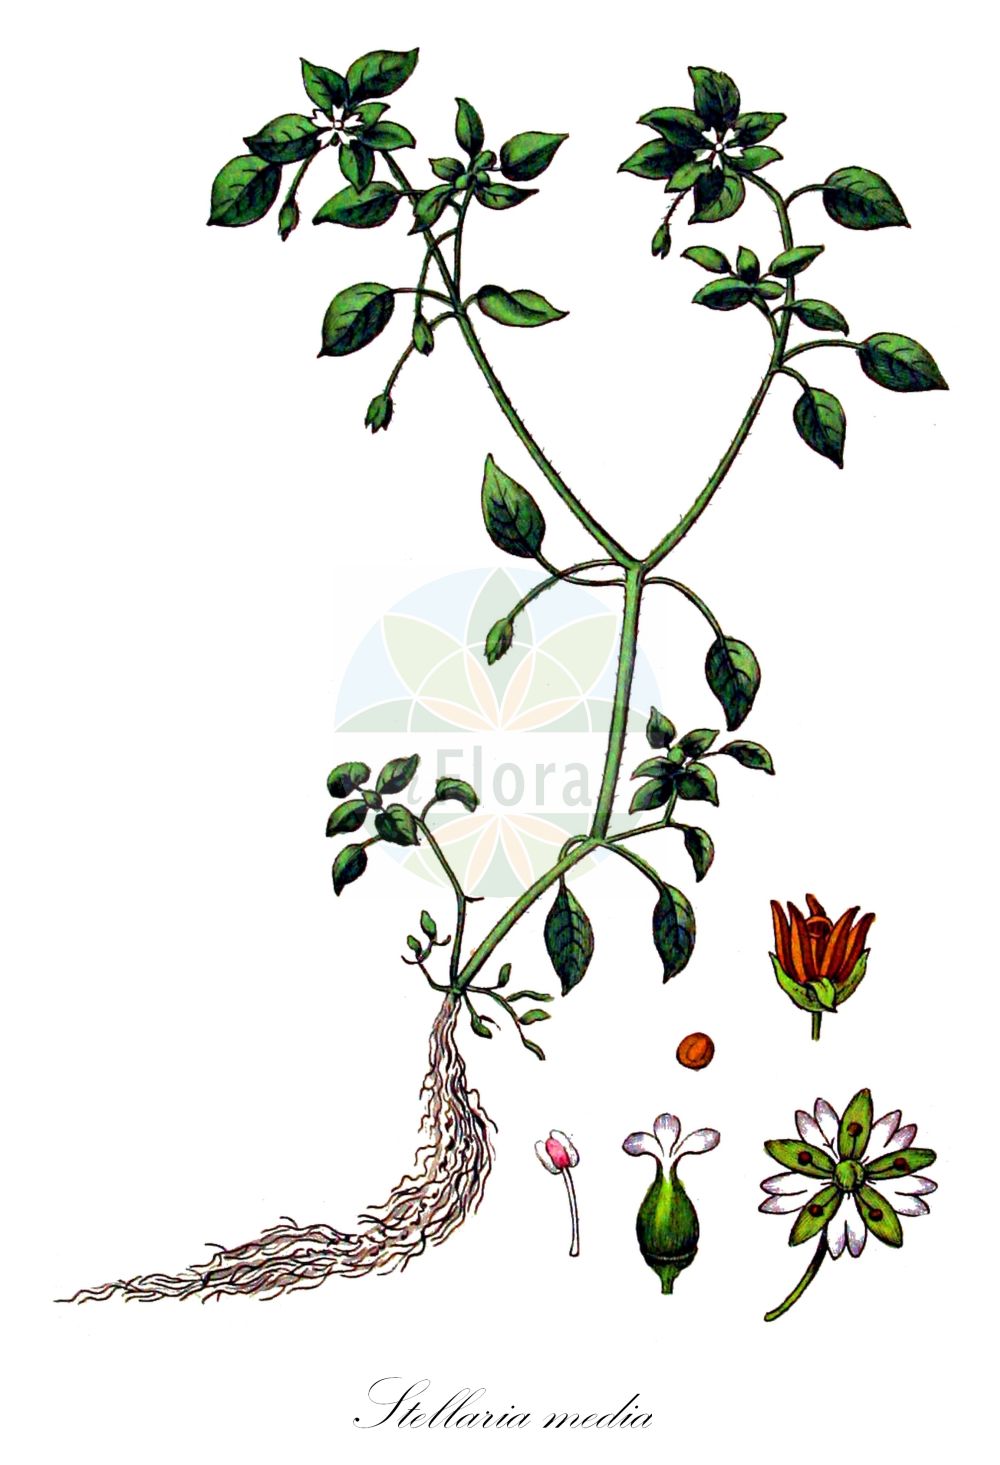 Historische Abbildung von Stellaria media (Vogel-Sternmiere - Common Chickweed). Das Bild zeigt Blatt, Bluete, Frucht und Same. ---- Historical Drawing of Stellaria media (Vogel-Sternmiere - Common Chickweed). The image is showing leaf, flower, fruit and seed.(Stellaria media,Vogel-Sternmiere,Common Chickweed,Alsine media,Malachia calycina,Stellaria apetala,Stellaria media,Stellaria media (L.) Cirillo,Stellaria media var. apetala,Vogel-Sternmiere,Vogelmiere,Gewoehnliche Vogelmiere,Huehnerdarm,Vogelmiere,Common Chickweed,Starwort,Winterweed,Stellaria,Sternmiere,Starwort,Caryophyllaceae,Nelkengewächse,Pink family,Blatt,Bluete,Frucht,Same,leaf,flower,fruit,seed,Kops (1800-1934))